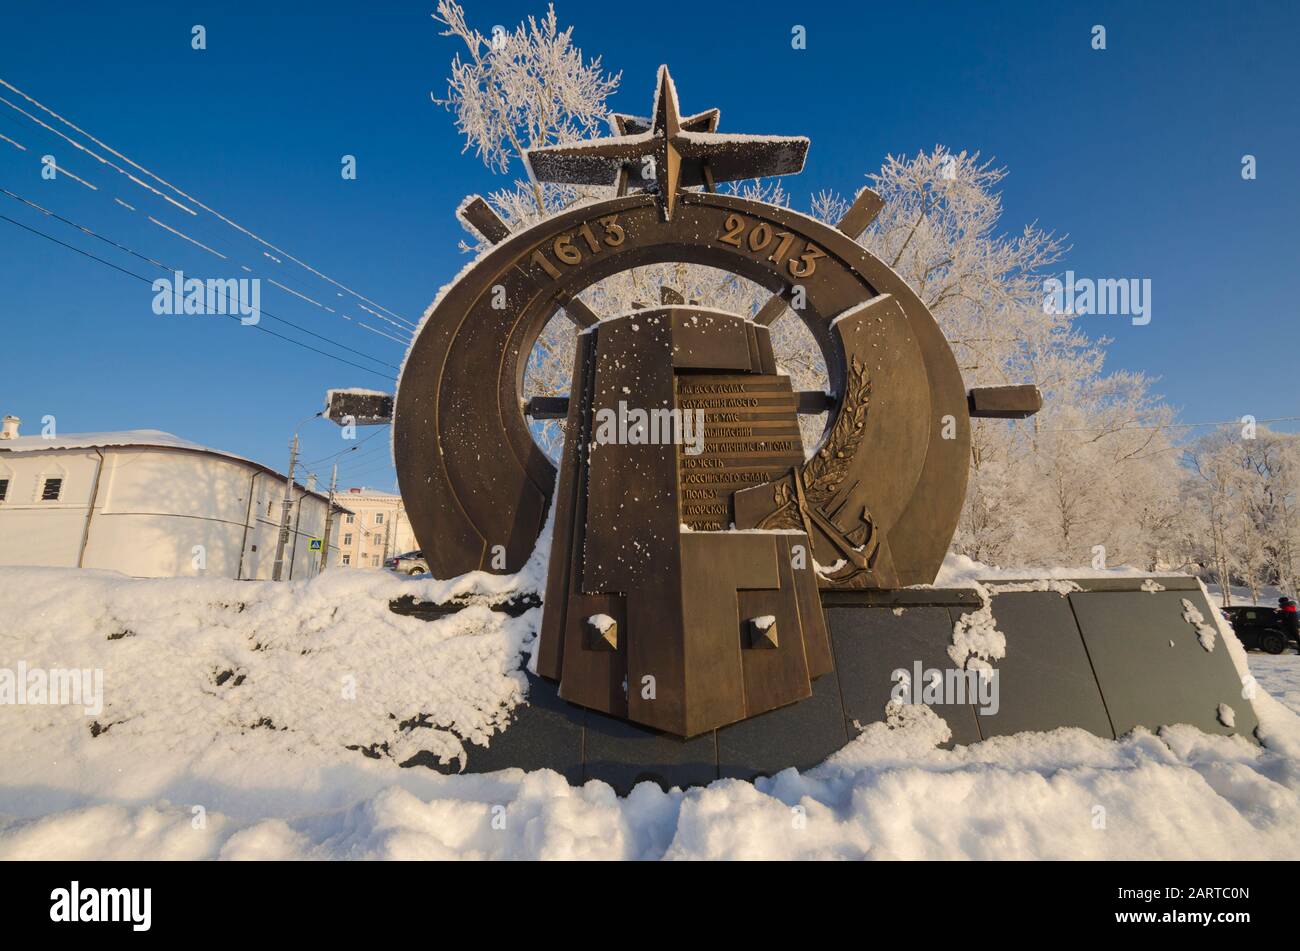 Januar 2020 - Archangelsk. Denkmal für See- und Flusspiloten in der Stadt Archangelsk. Russland, Archangelsk Stockfoto